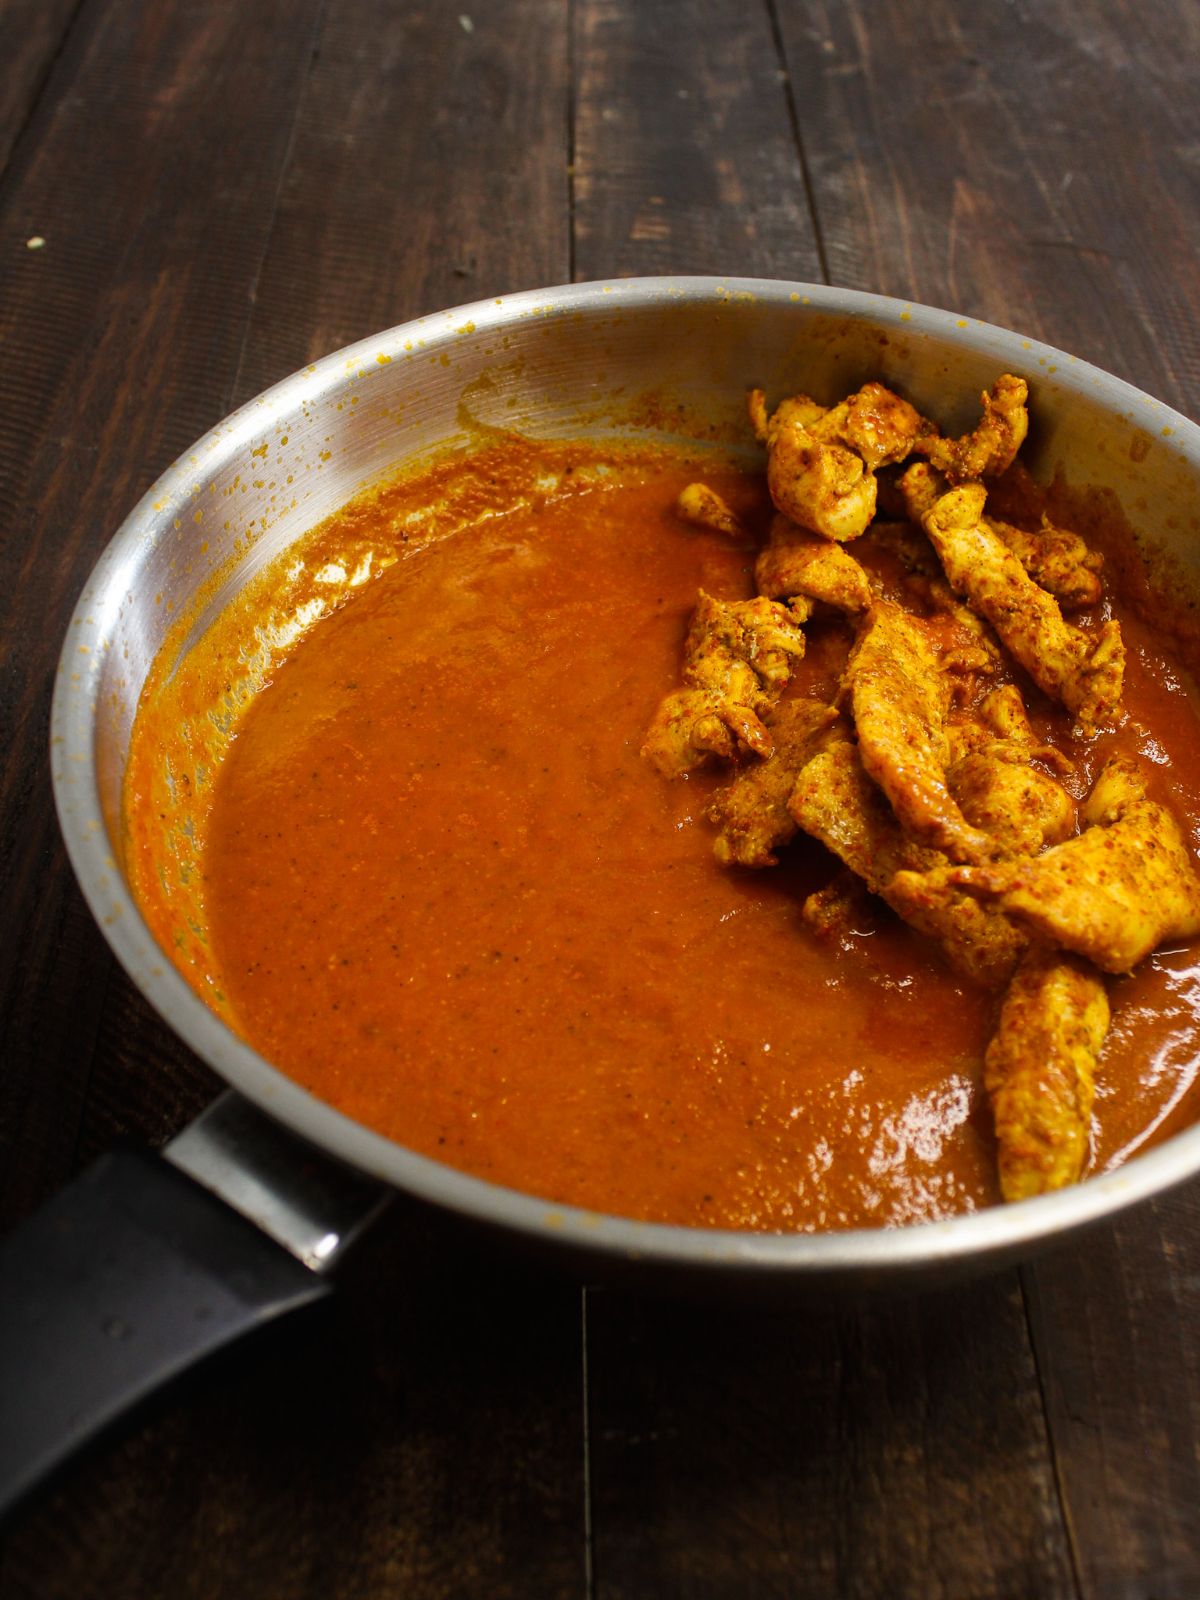 Add the prepared tandoori chicken to the mixture